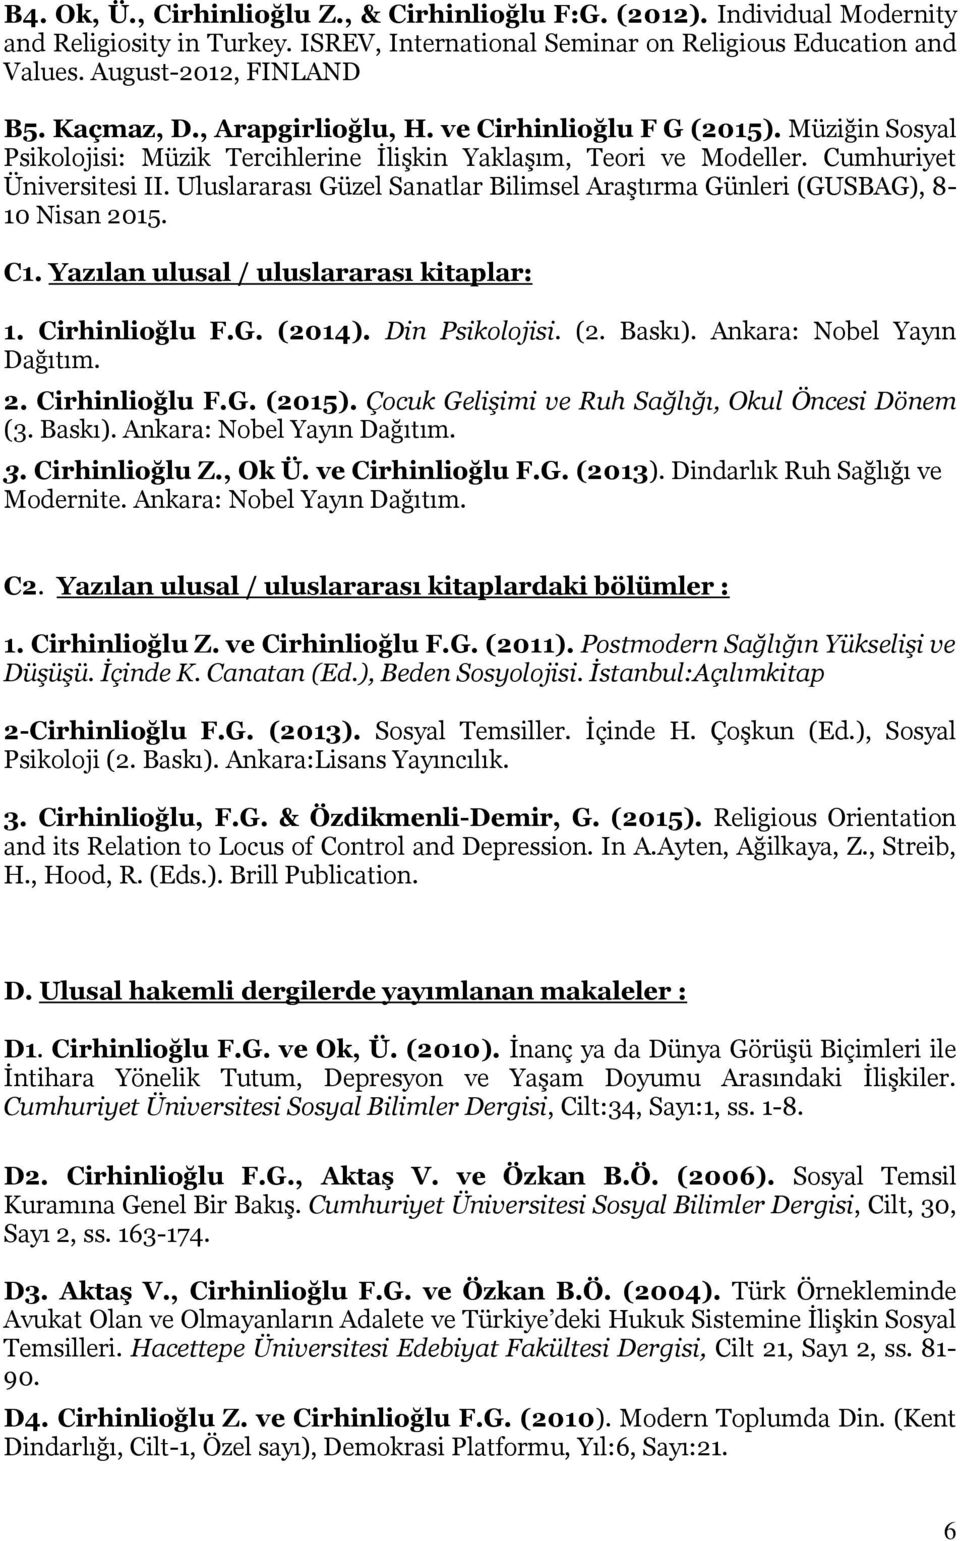 Uluslararası Güzel Sanatlar Bilimsel Araştırma Günleri (GUSBAG), 8-10 Nisan 2015. C1. Yazılan ulusal / uluslararası kitaplar: 1. Cirhinlioğlu F.G. (2014). Din Psikolojisi. (2. Baskı).